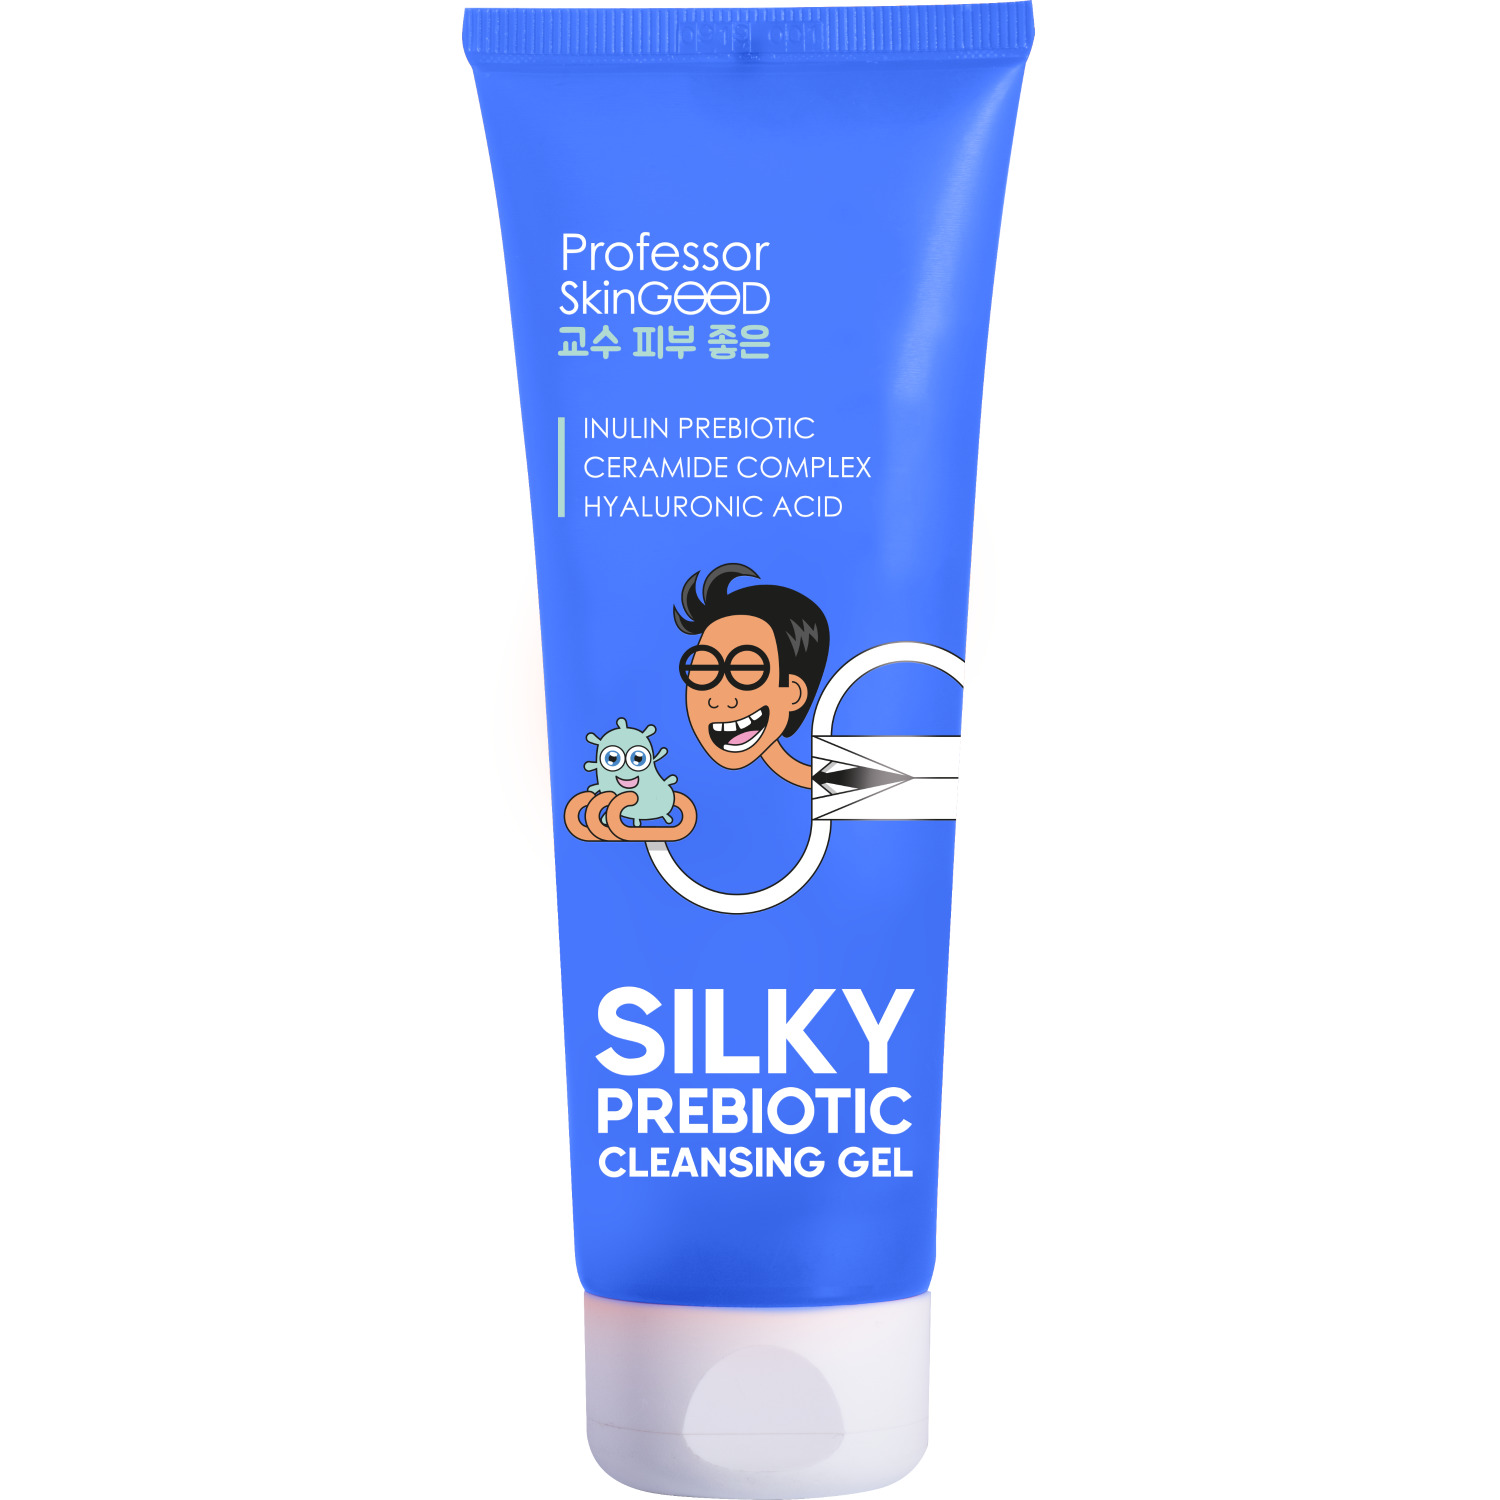 фото Гель для умывания лица professor skingood "silky prebiotic cleansing gel" увлажняющий с пребиотиками, деликатное очищение кожи без стянутости, уход за лицом, 120мл